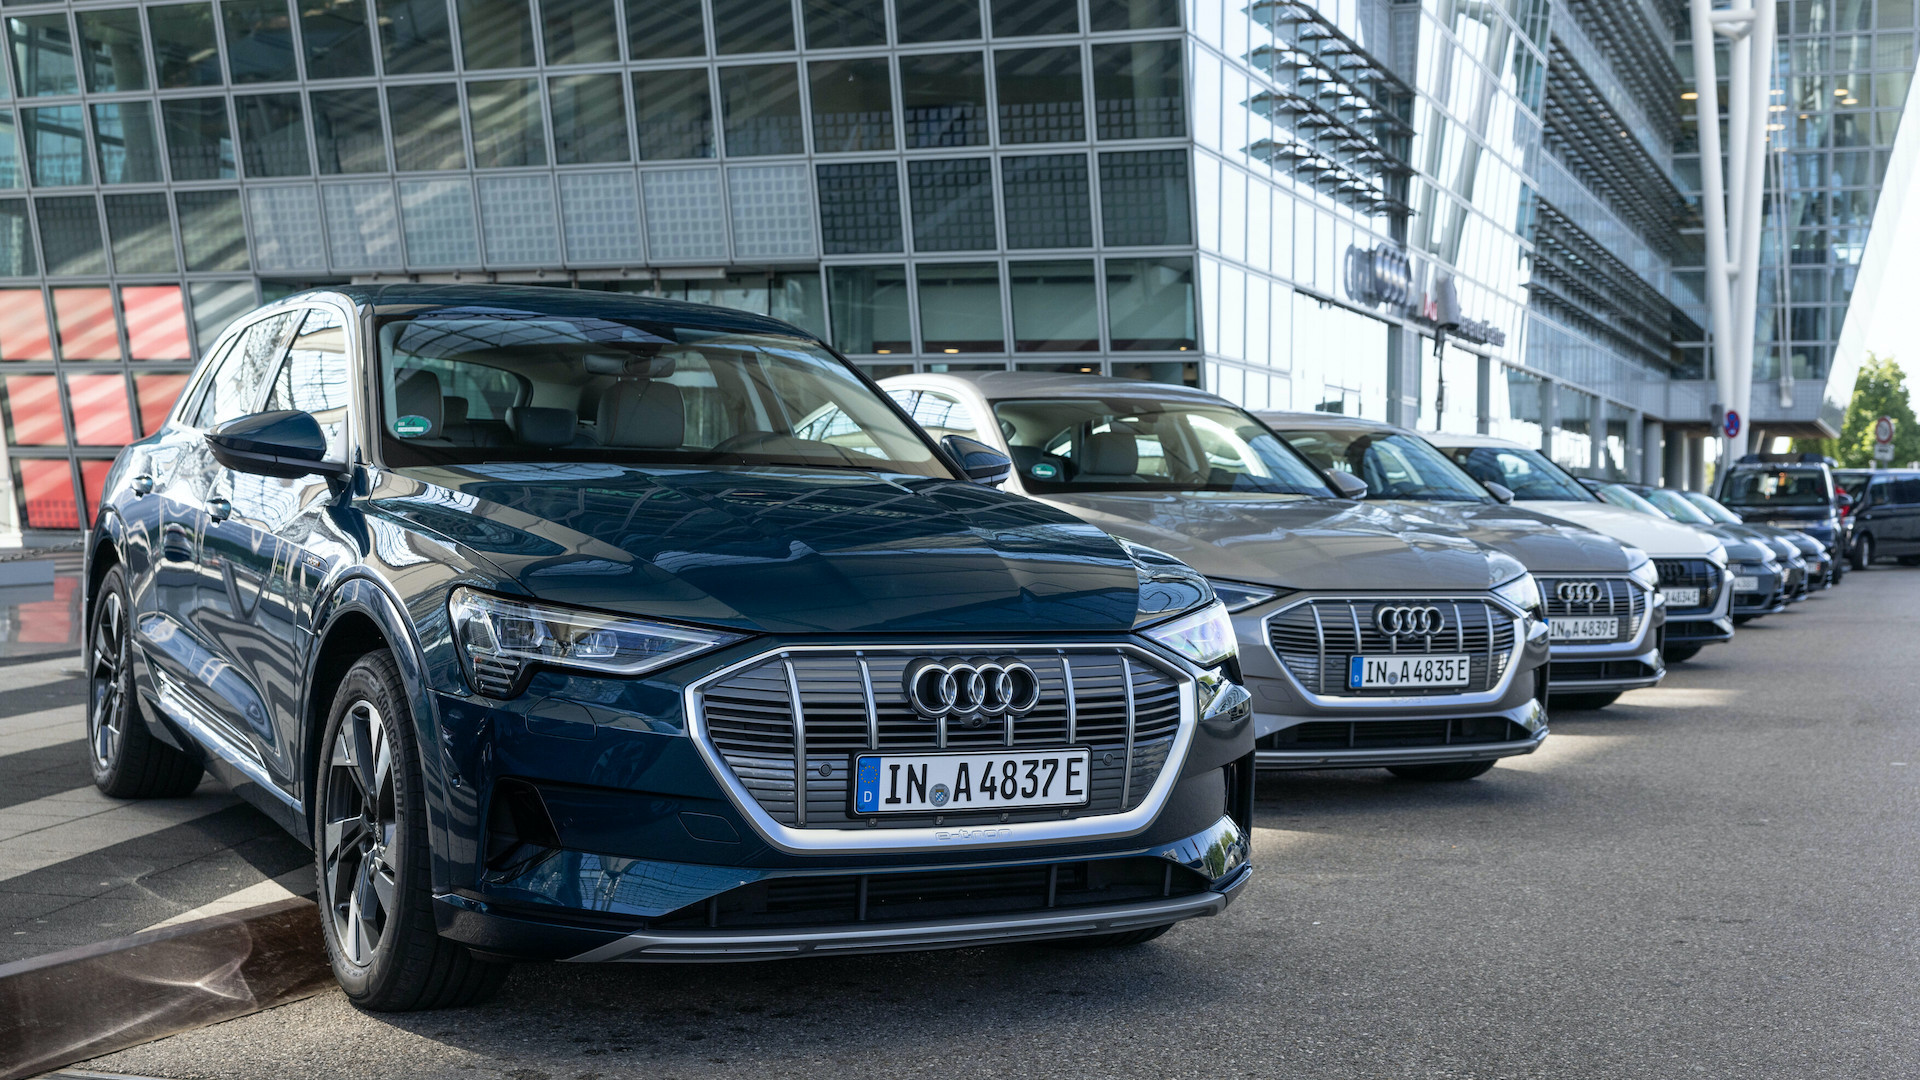 Prikaz dosega v električnih vozilih Audi daje zanesljivo sliko